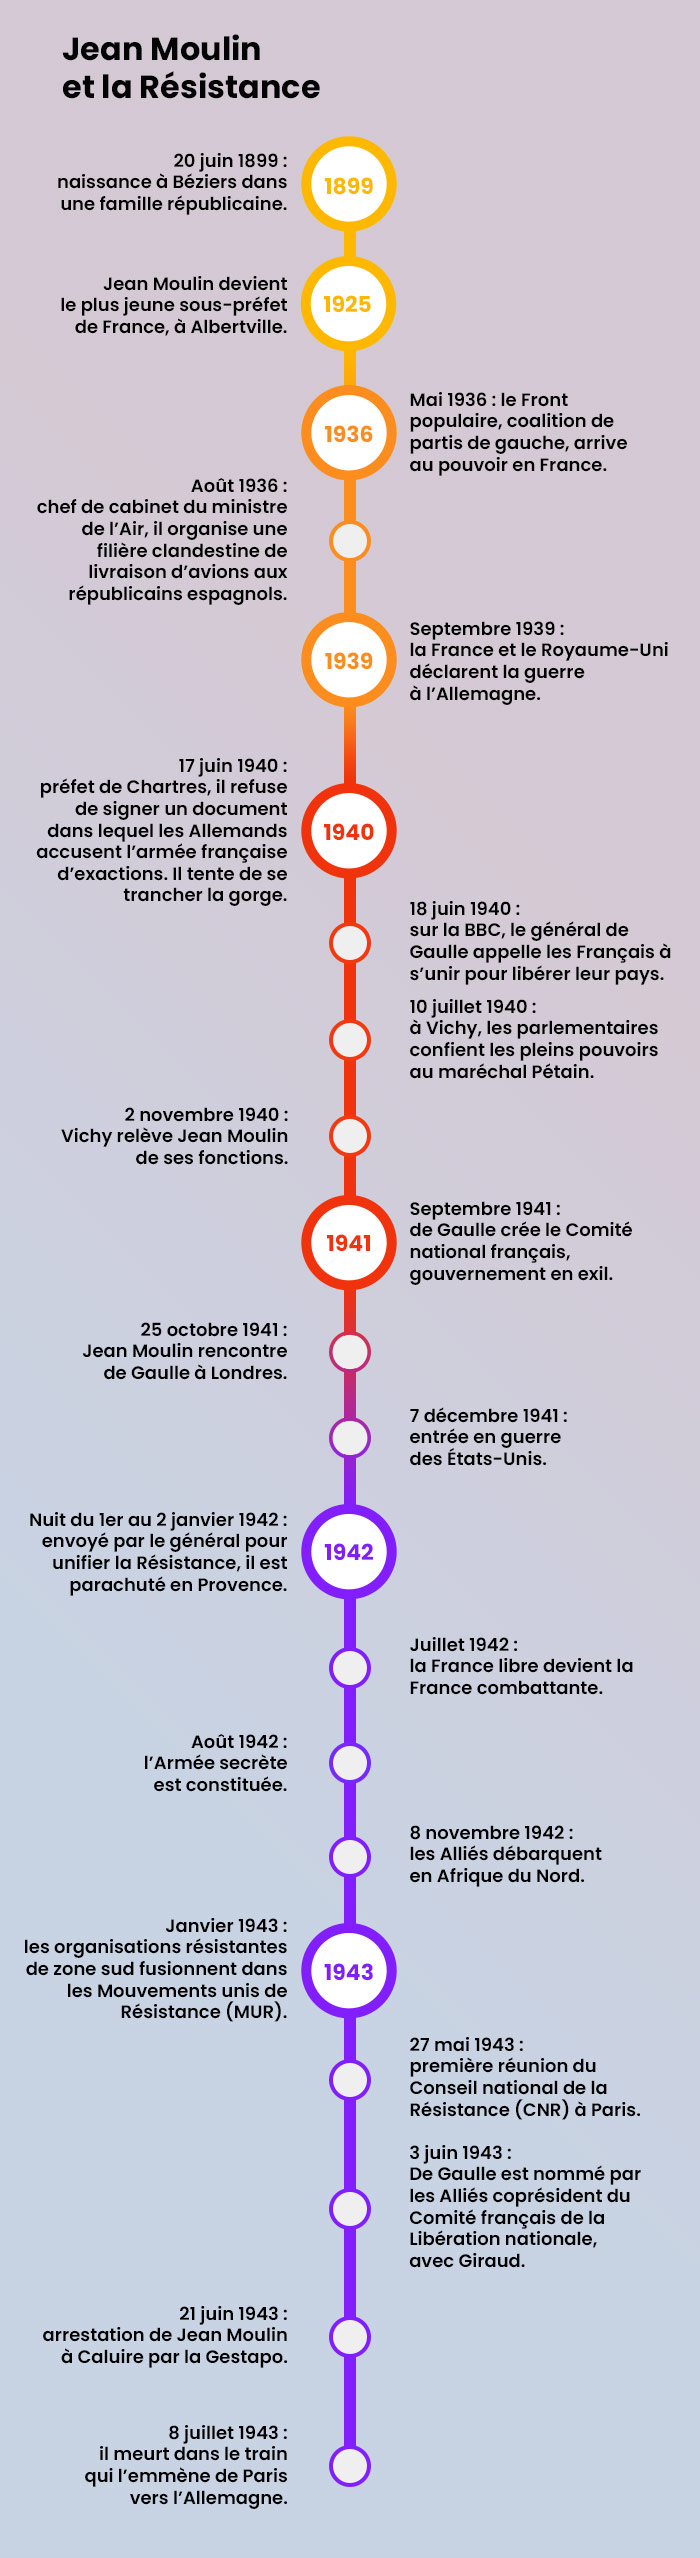 Jean Moulin et la Résistance : frise chronologique